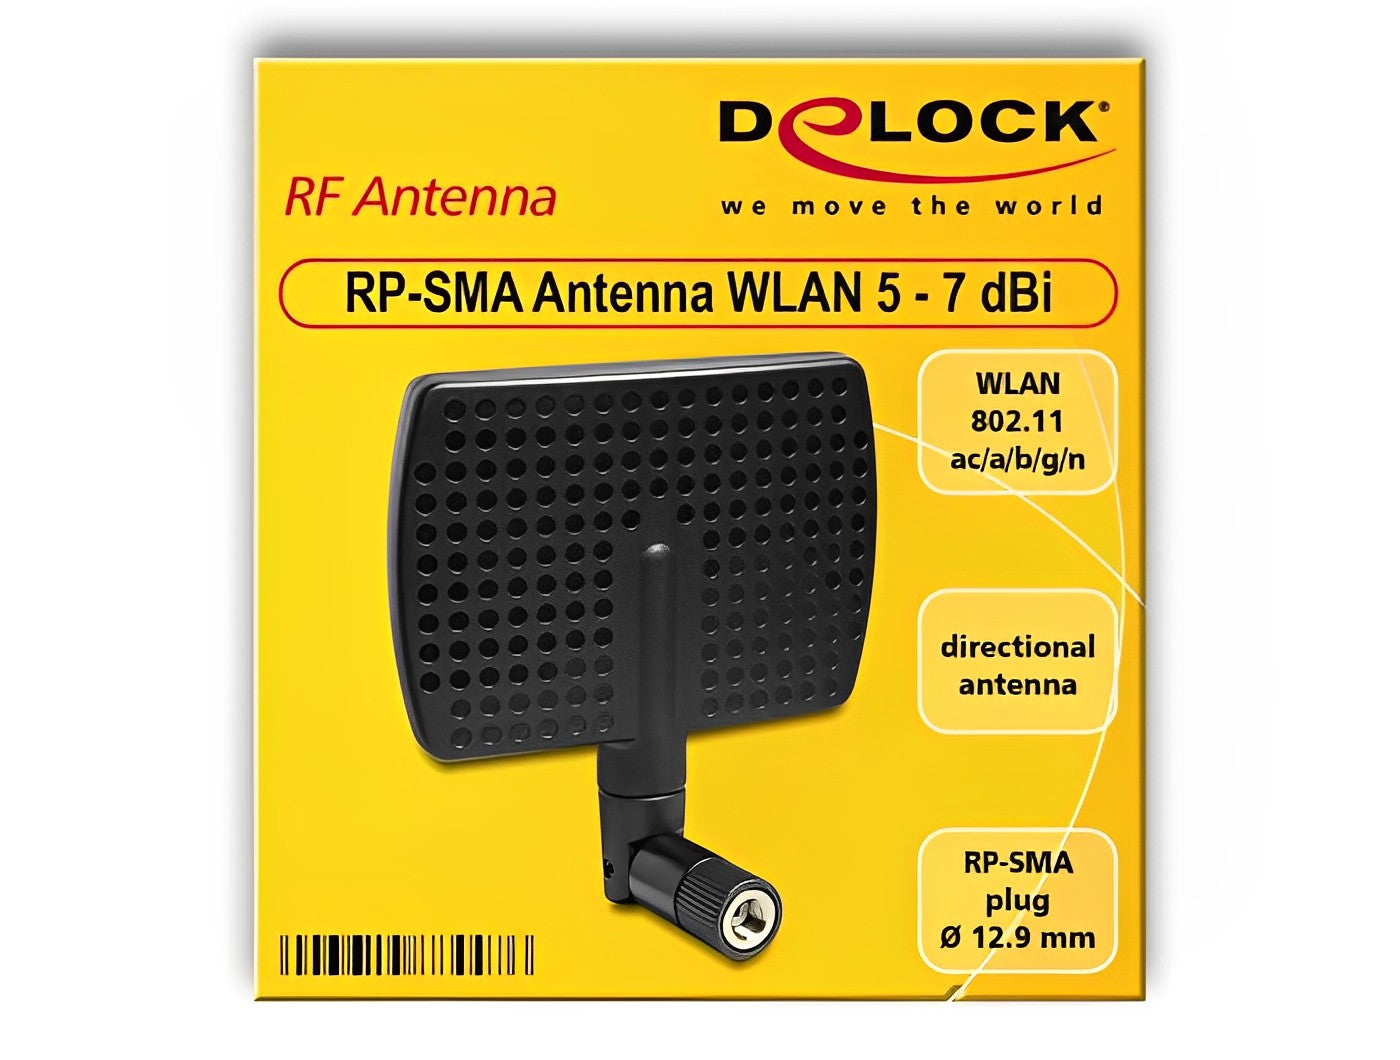 אנטנה מסתובבת כיוונית WLAN 802.11 ac/a/b/g/n 5 - 7 dBi פנימית מחבר RP-SMA plug - delock.israel